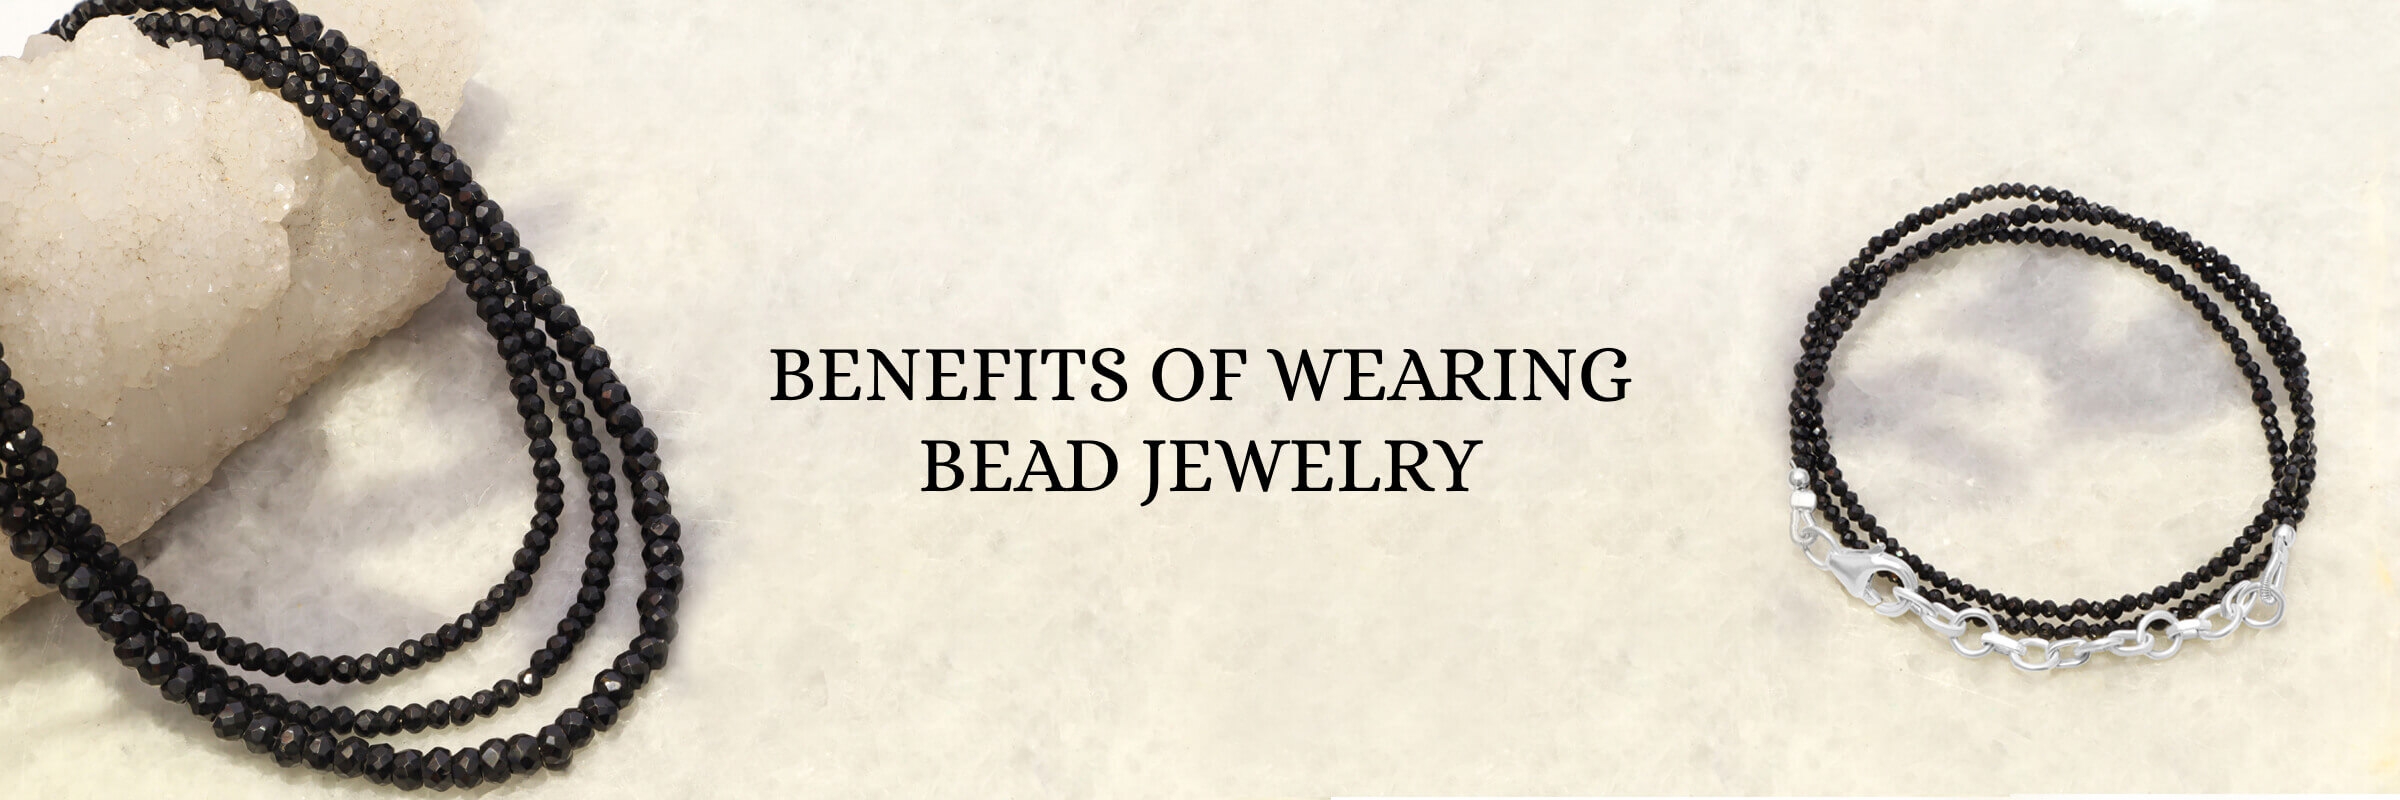 Healing Perks of Gemstone Bead Jewelry